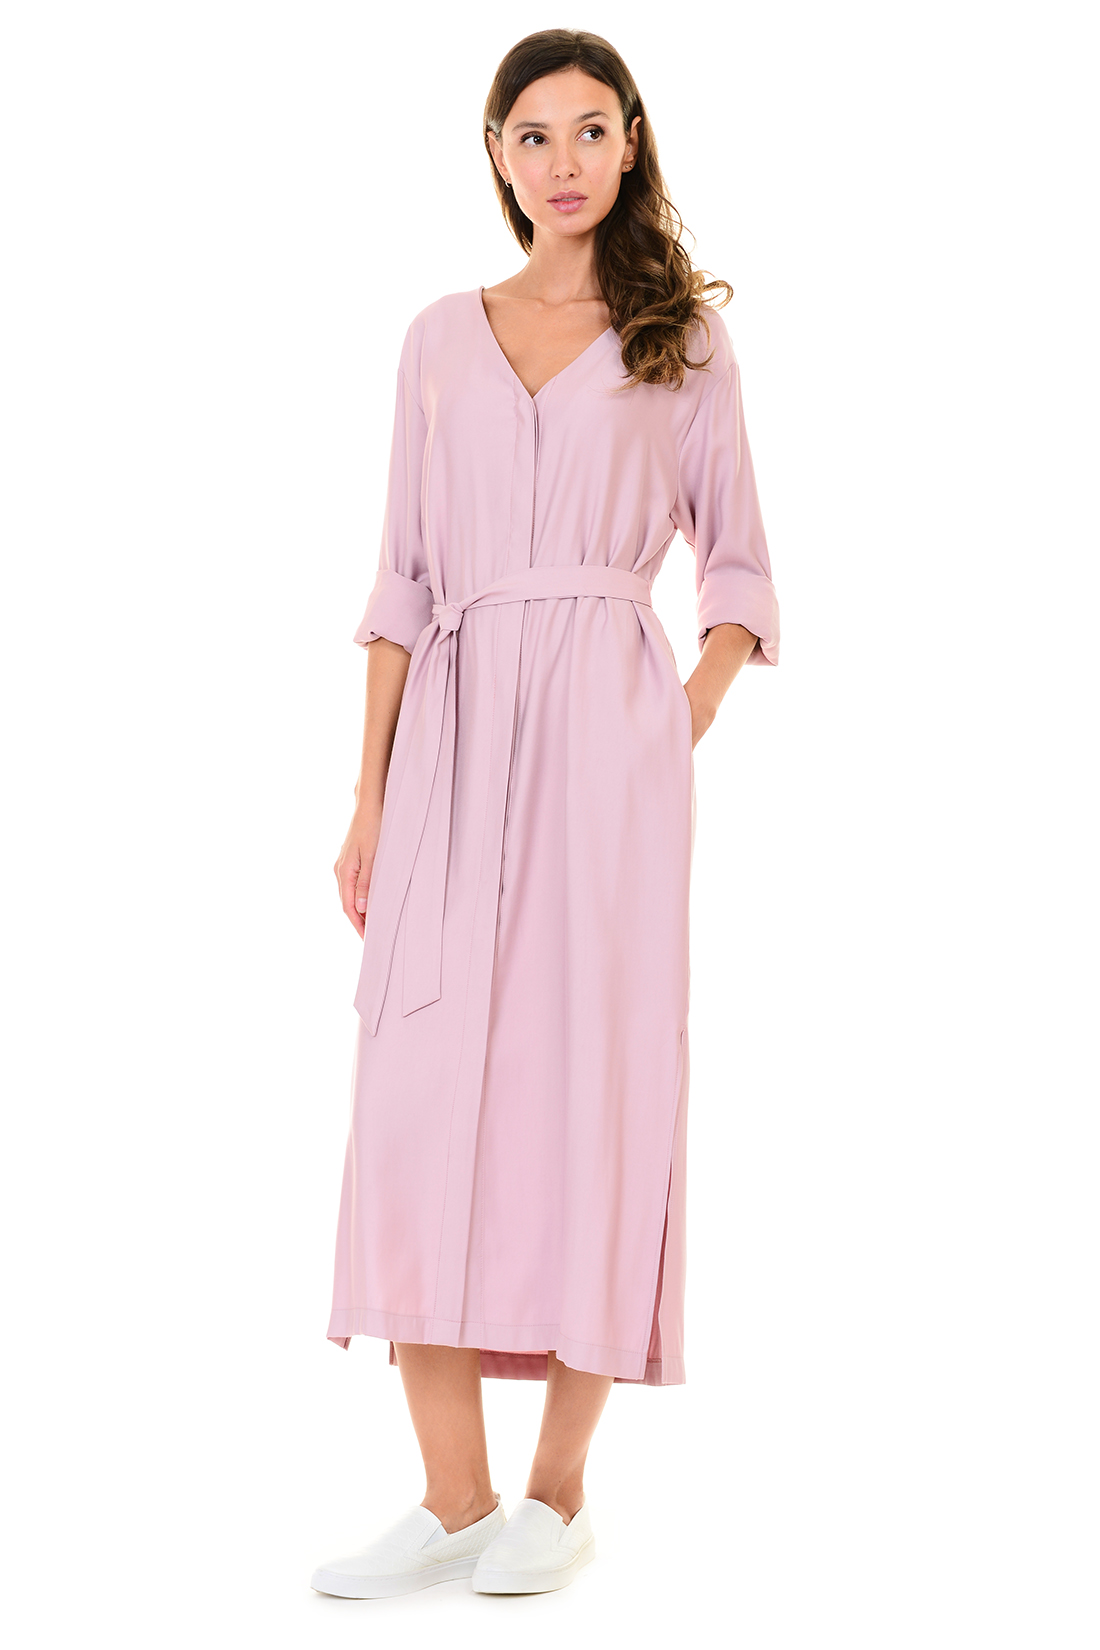 Платье с запахом (арт. baon B457106), размер S, цвет розовый Платье с запахом (арт. baon B457106) - фото 1